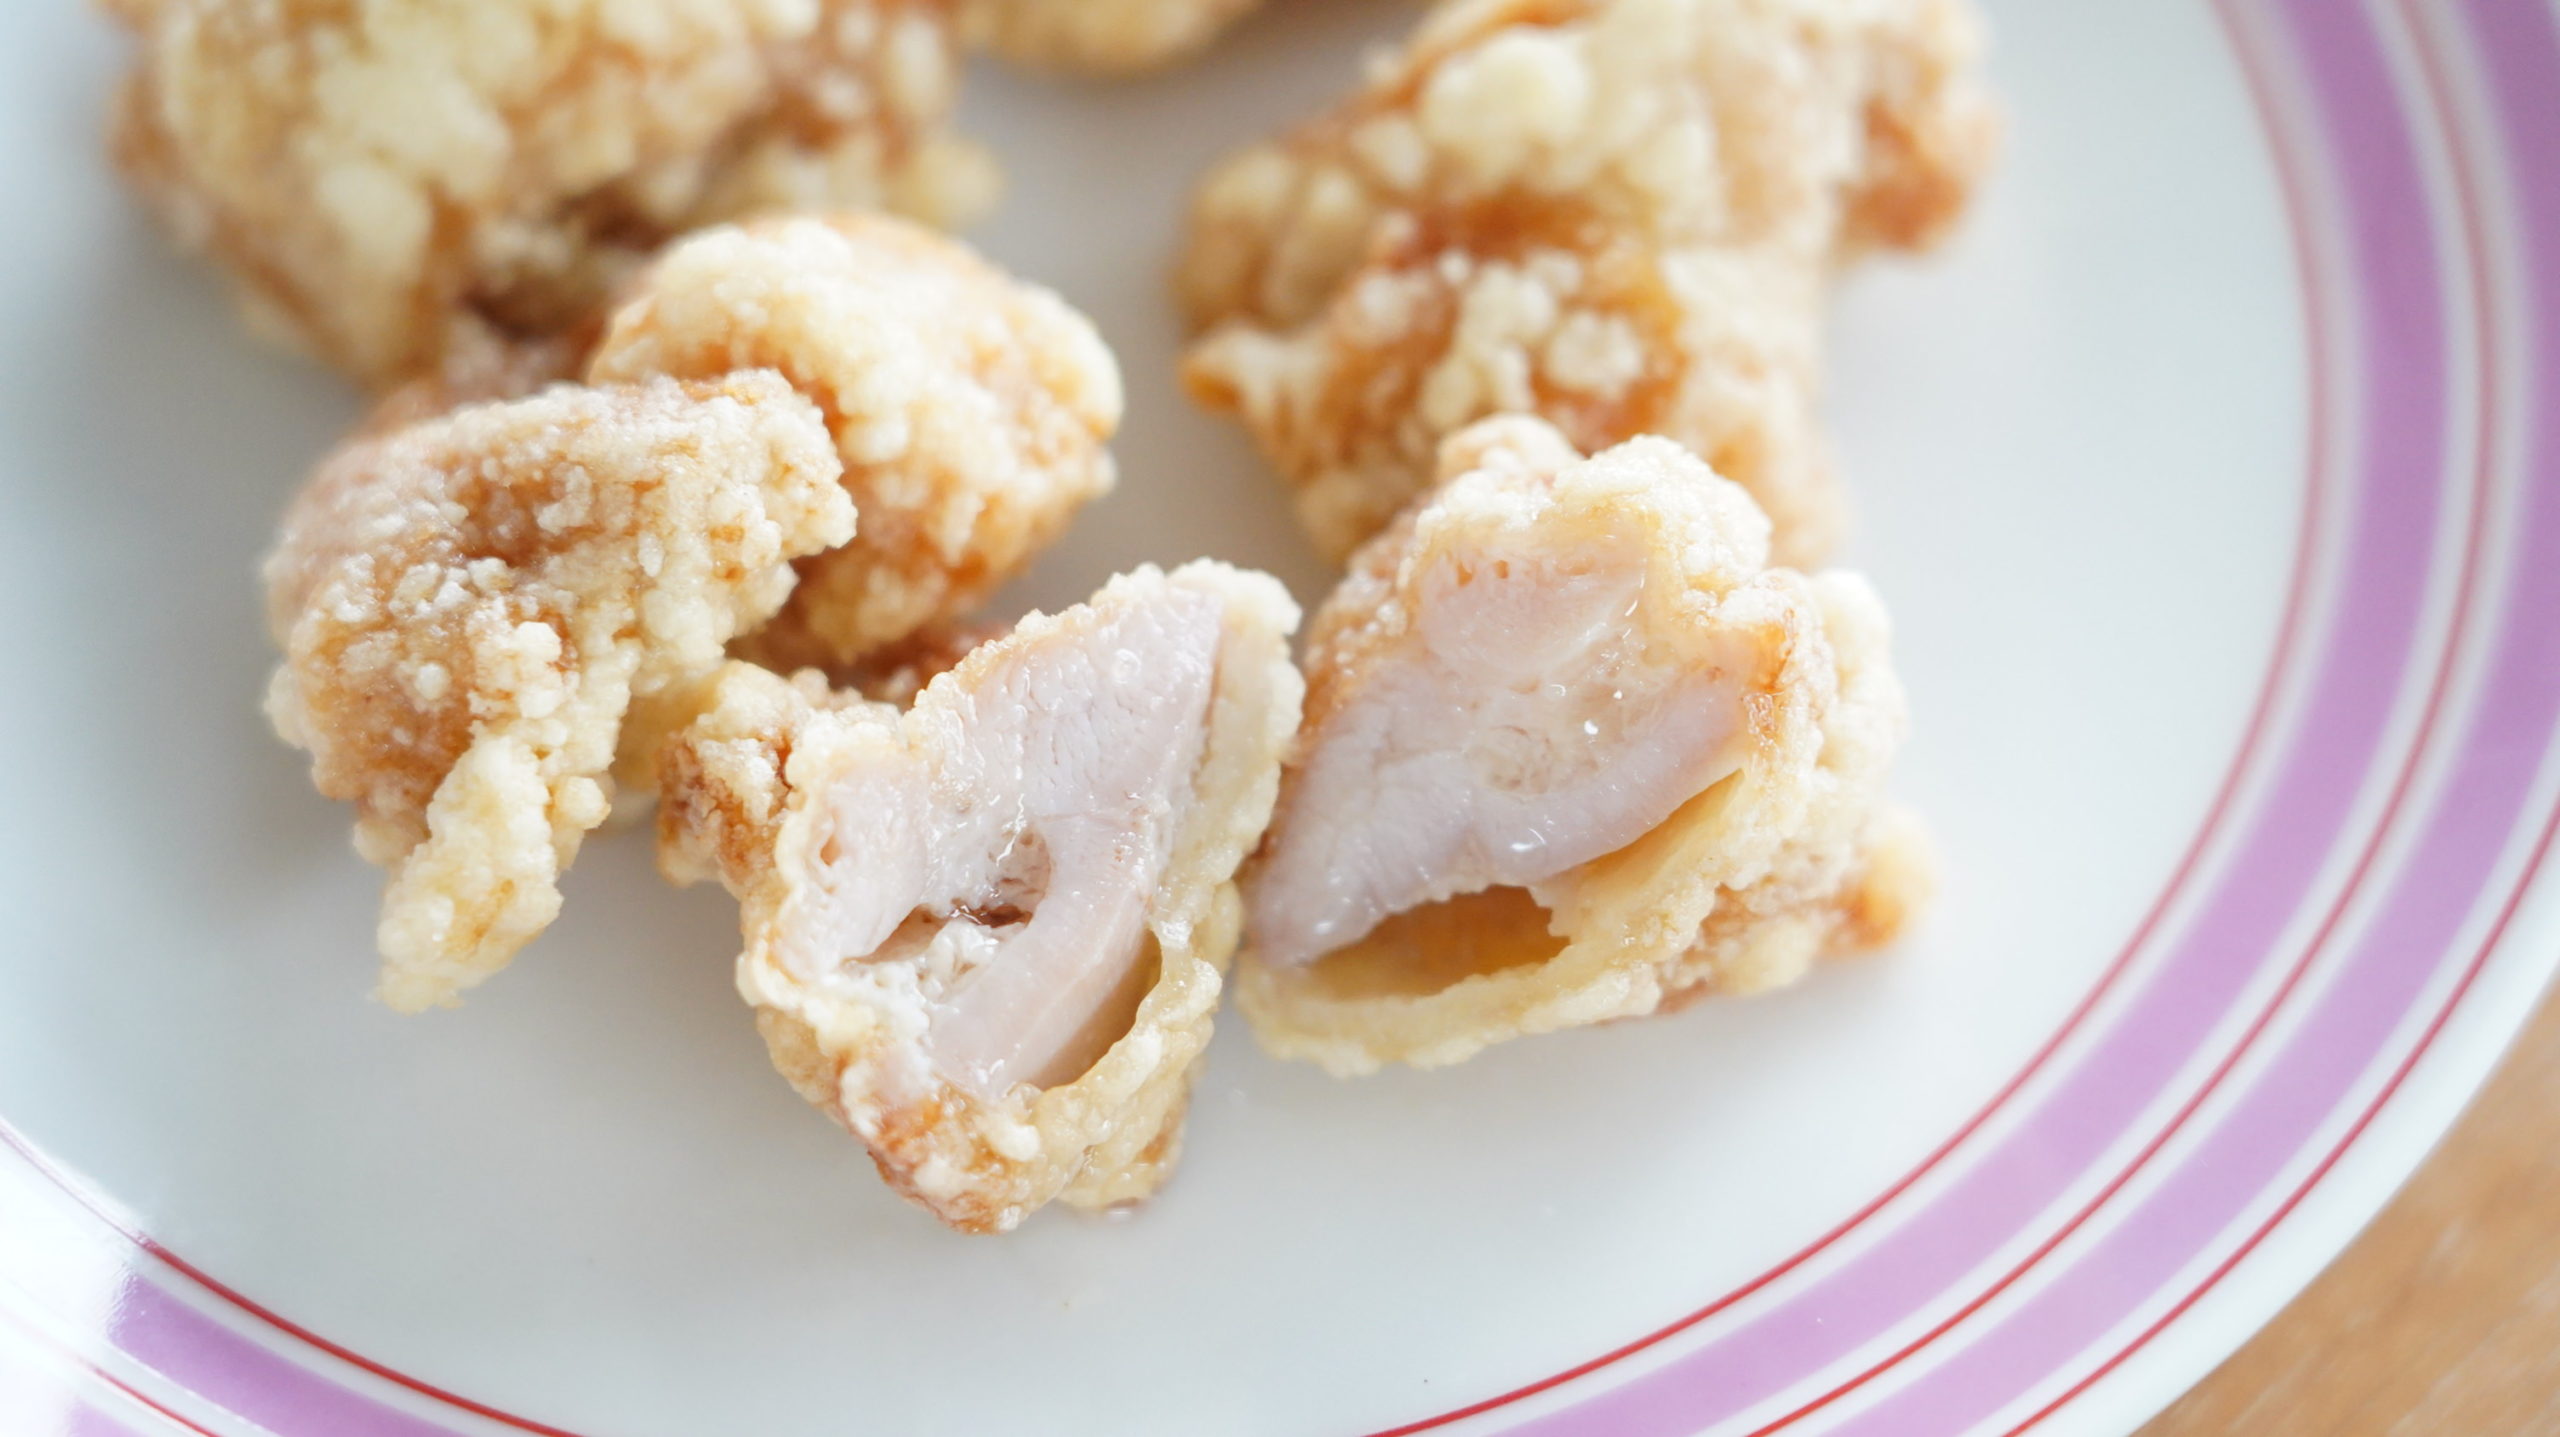 コストコの冷凍食品「CP 若鶏の竜田揚げ」の断面の写真